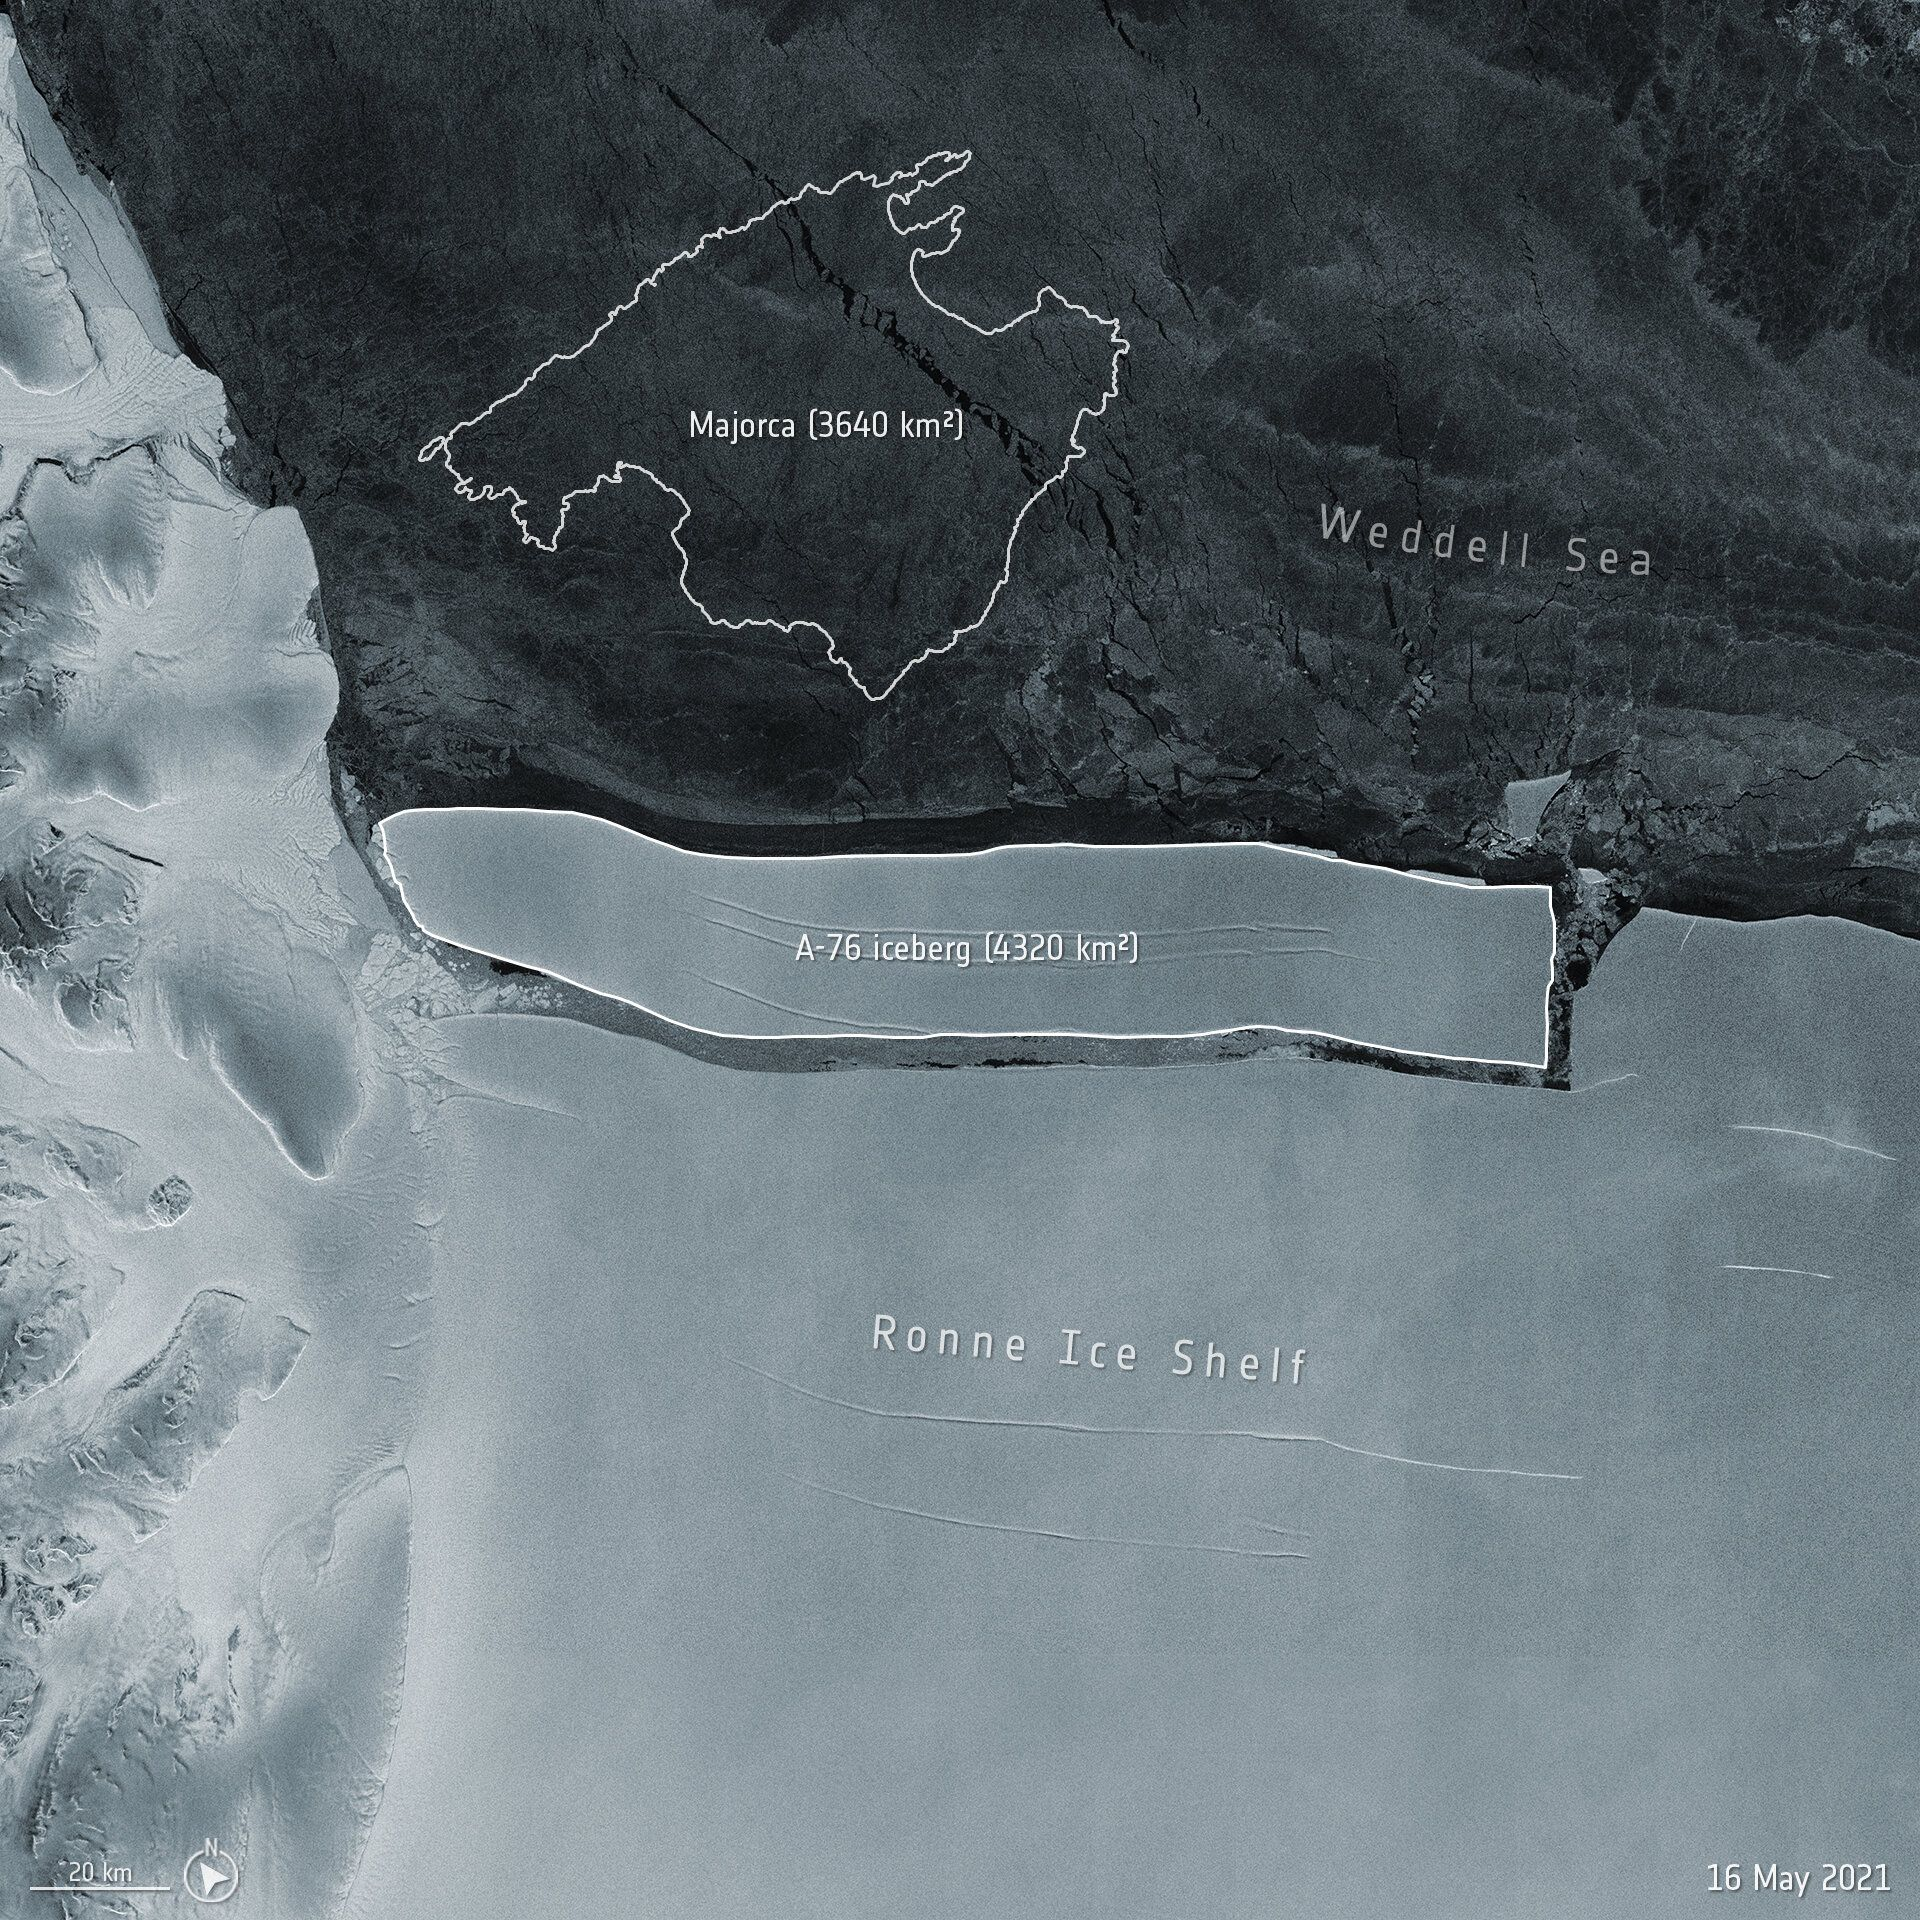 Айсберг А-76, образовавшийся с западной стороны ледникового шельфа Ронне в море Уэдделл